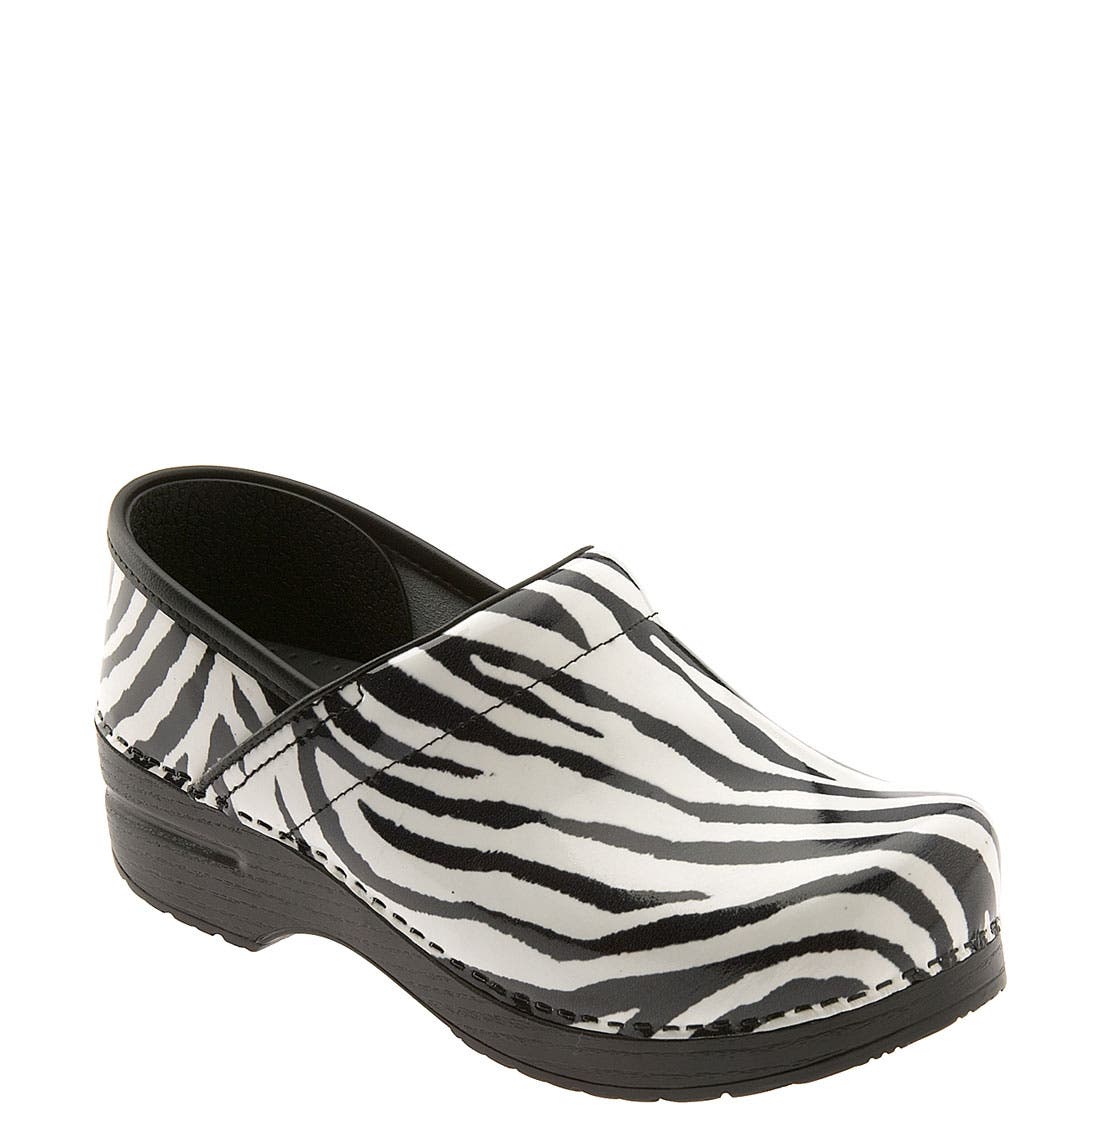 zebra dansko clogs